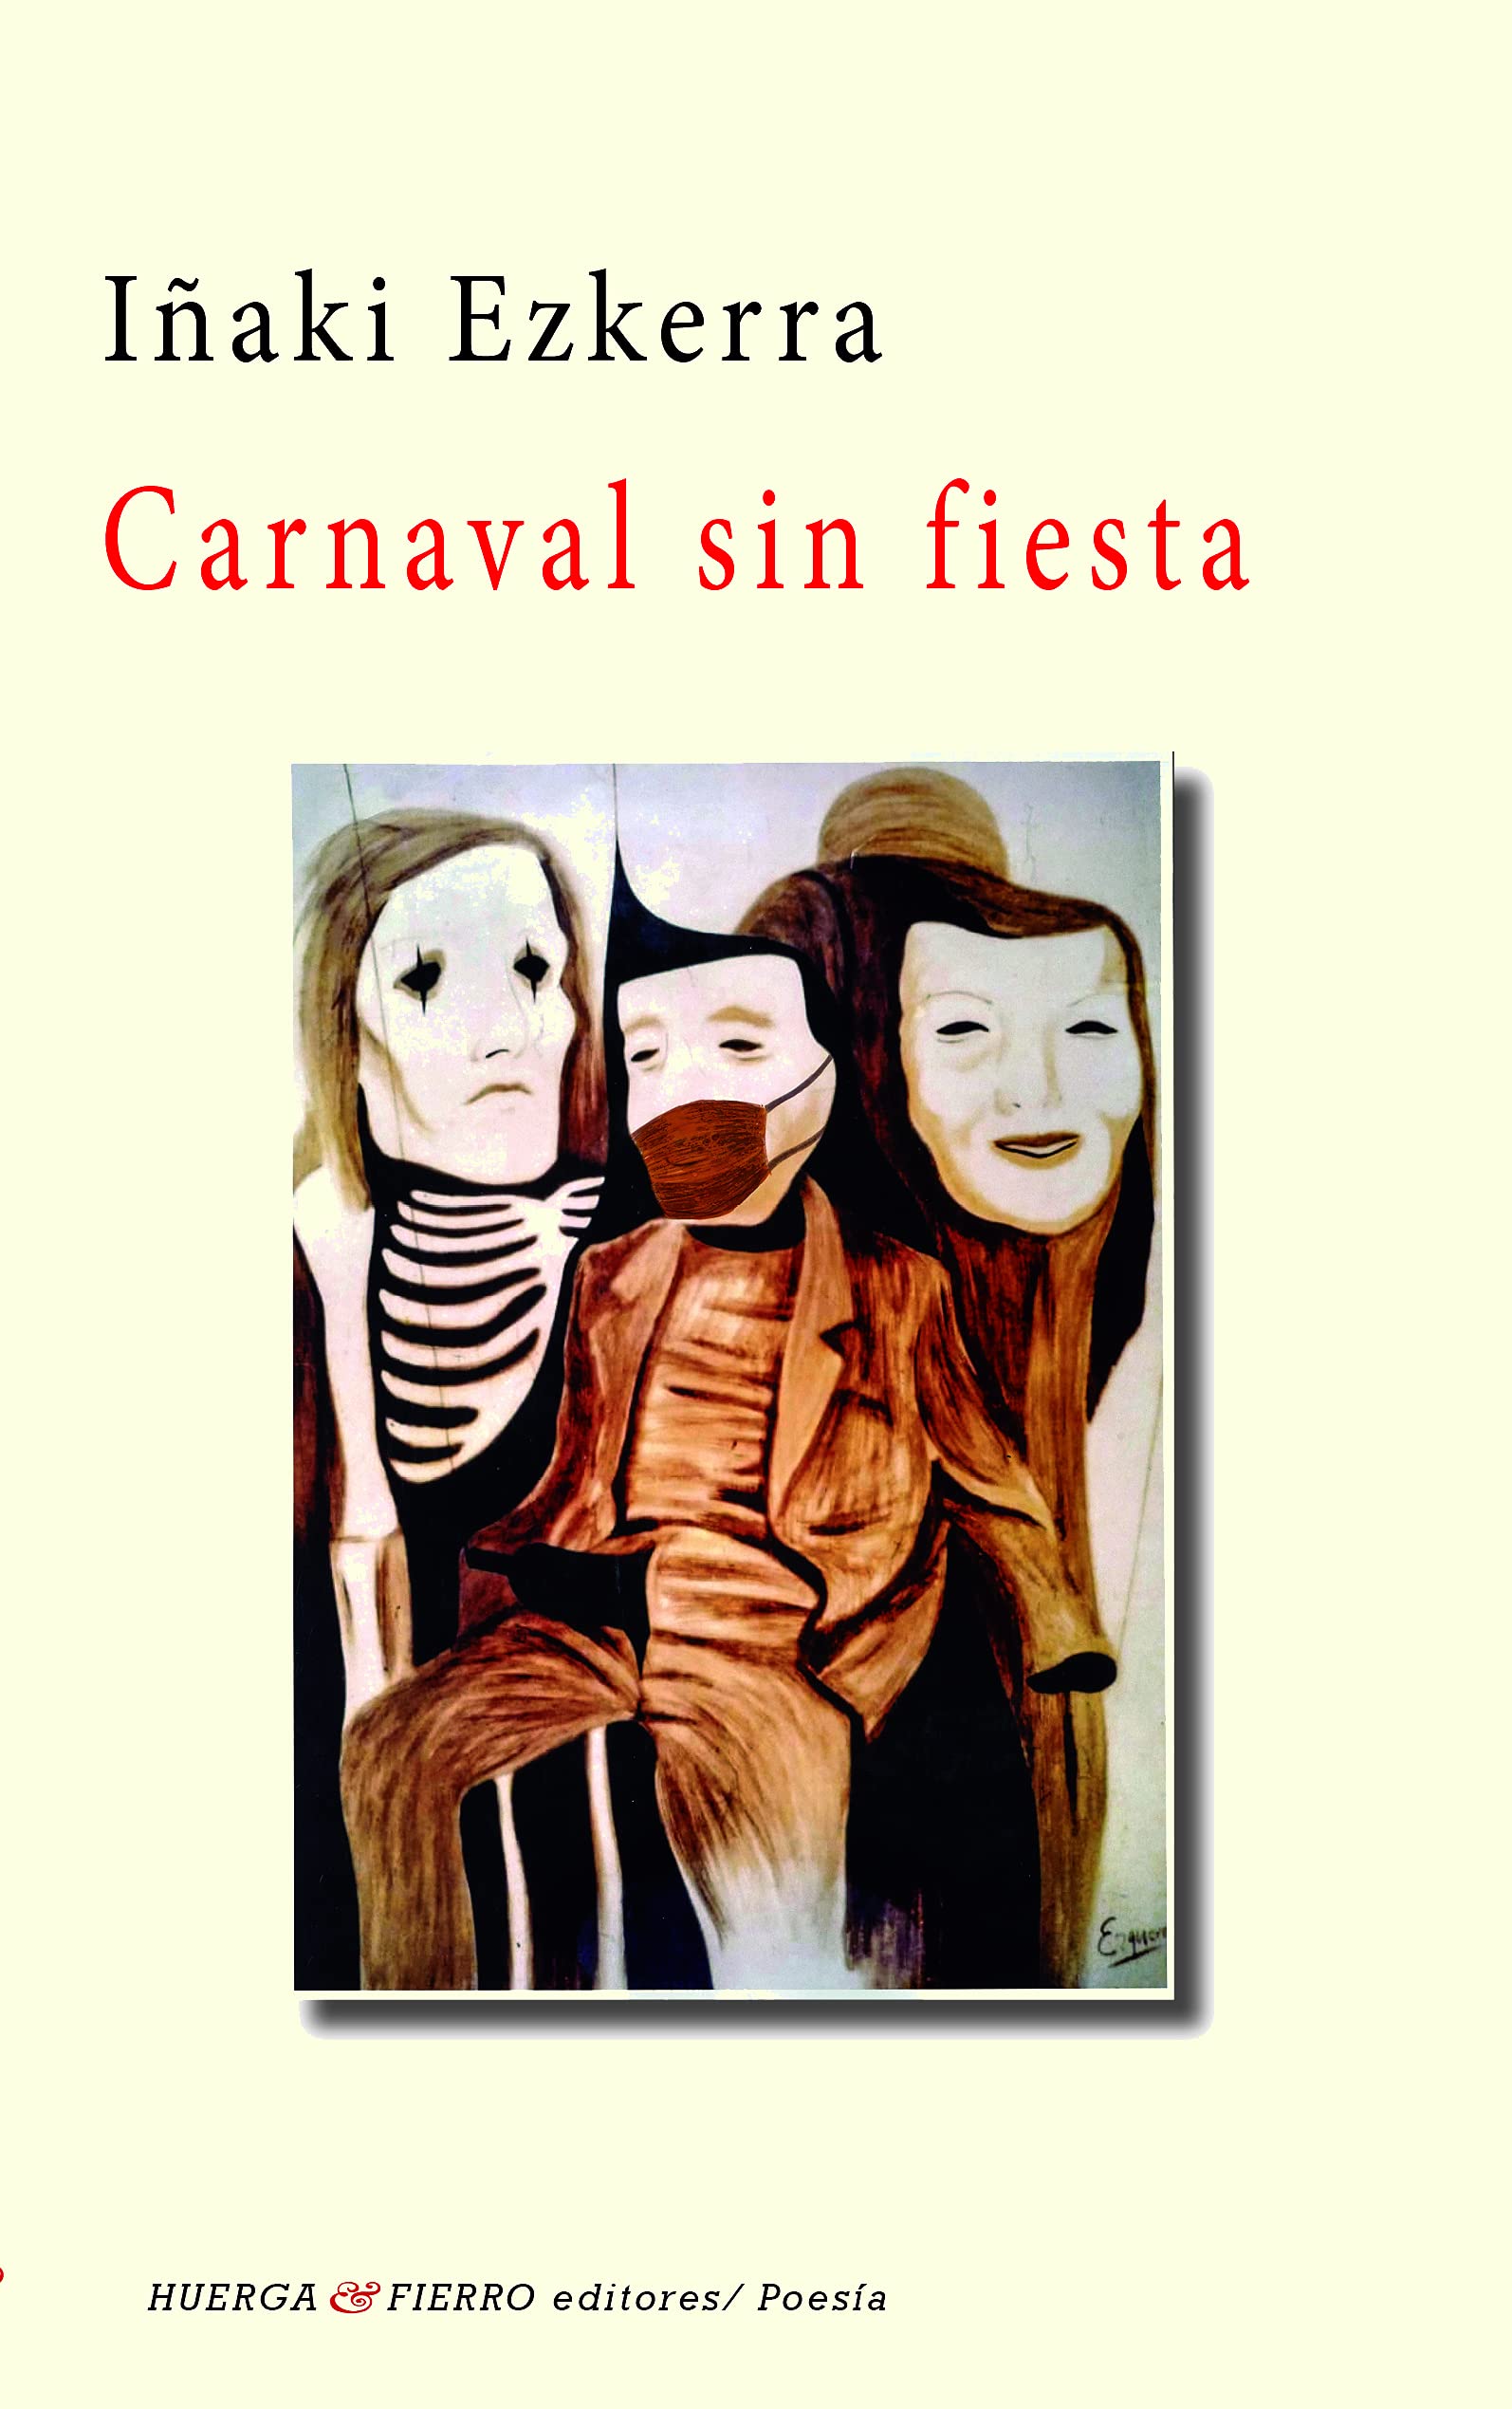 Carnaval sin fiesta, poemas de Iñaki Ezkerra